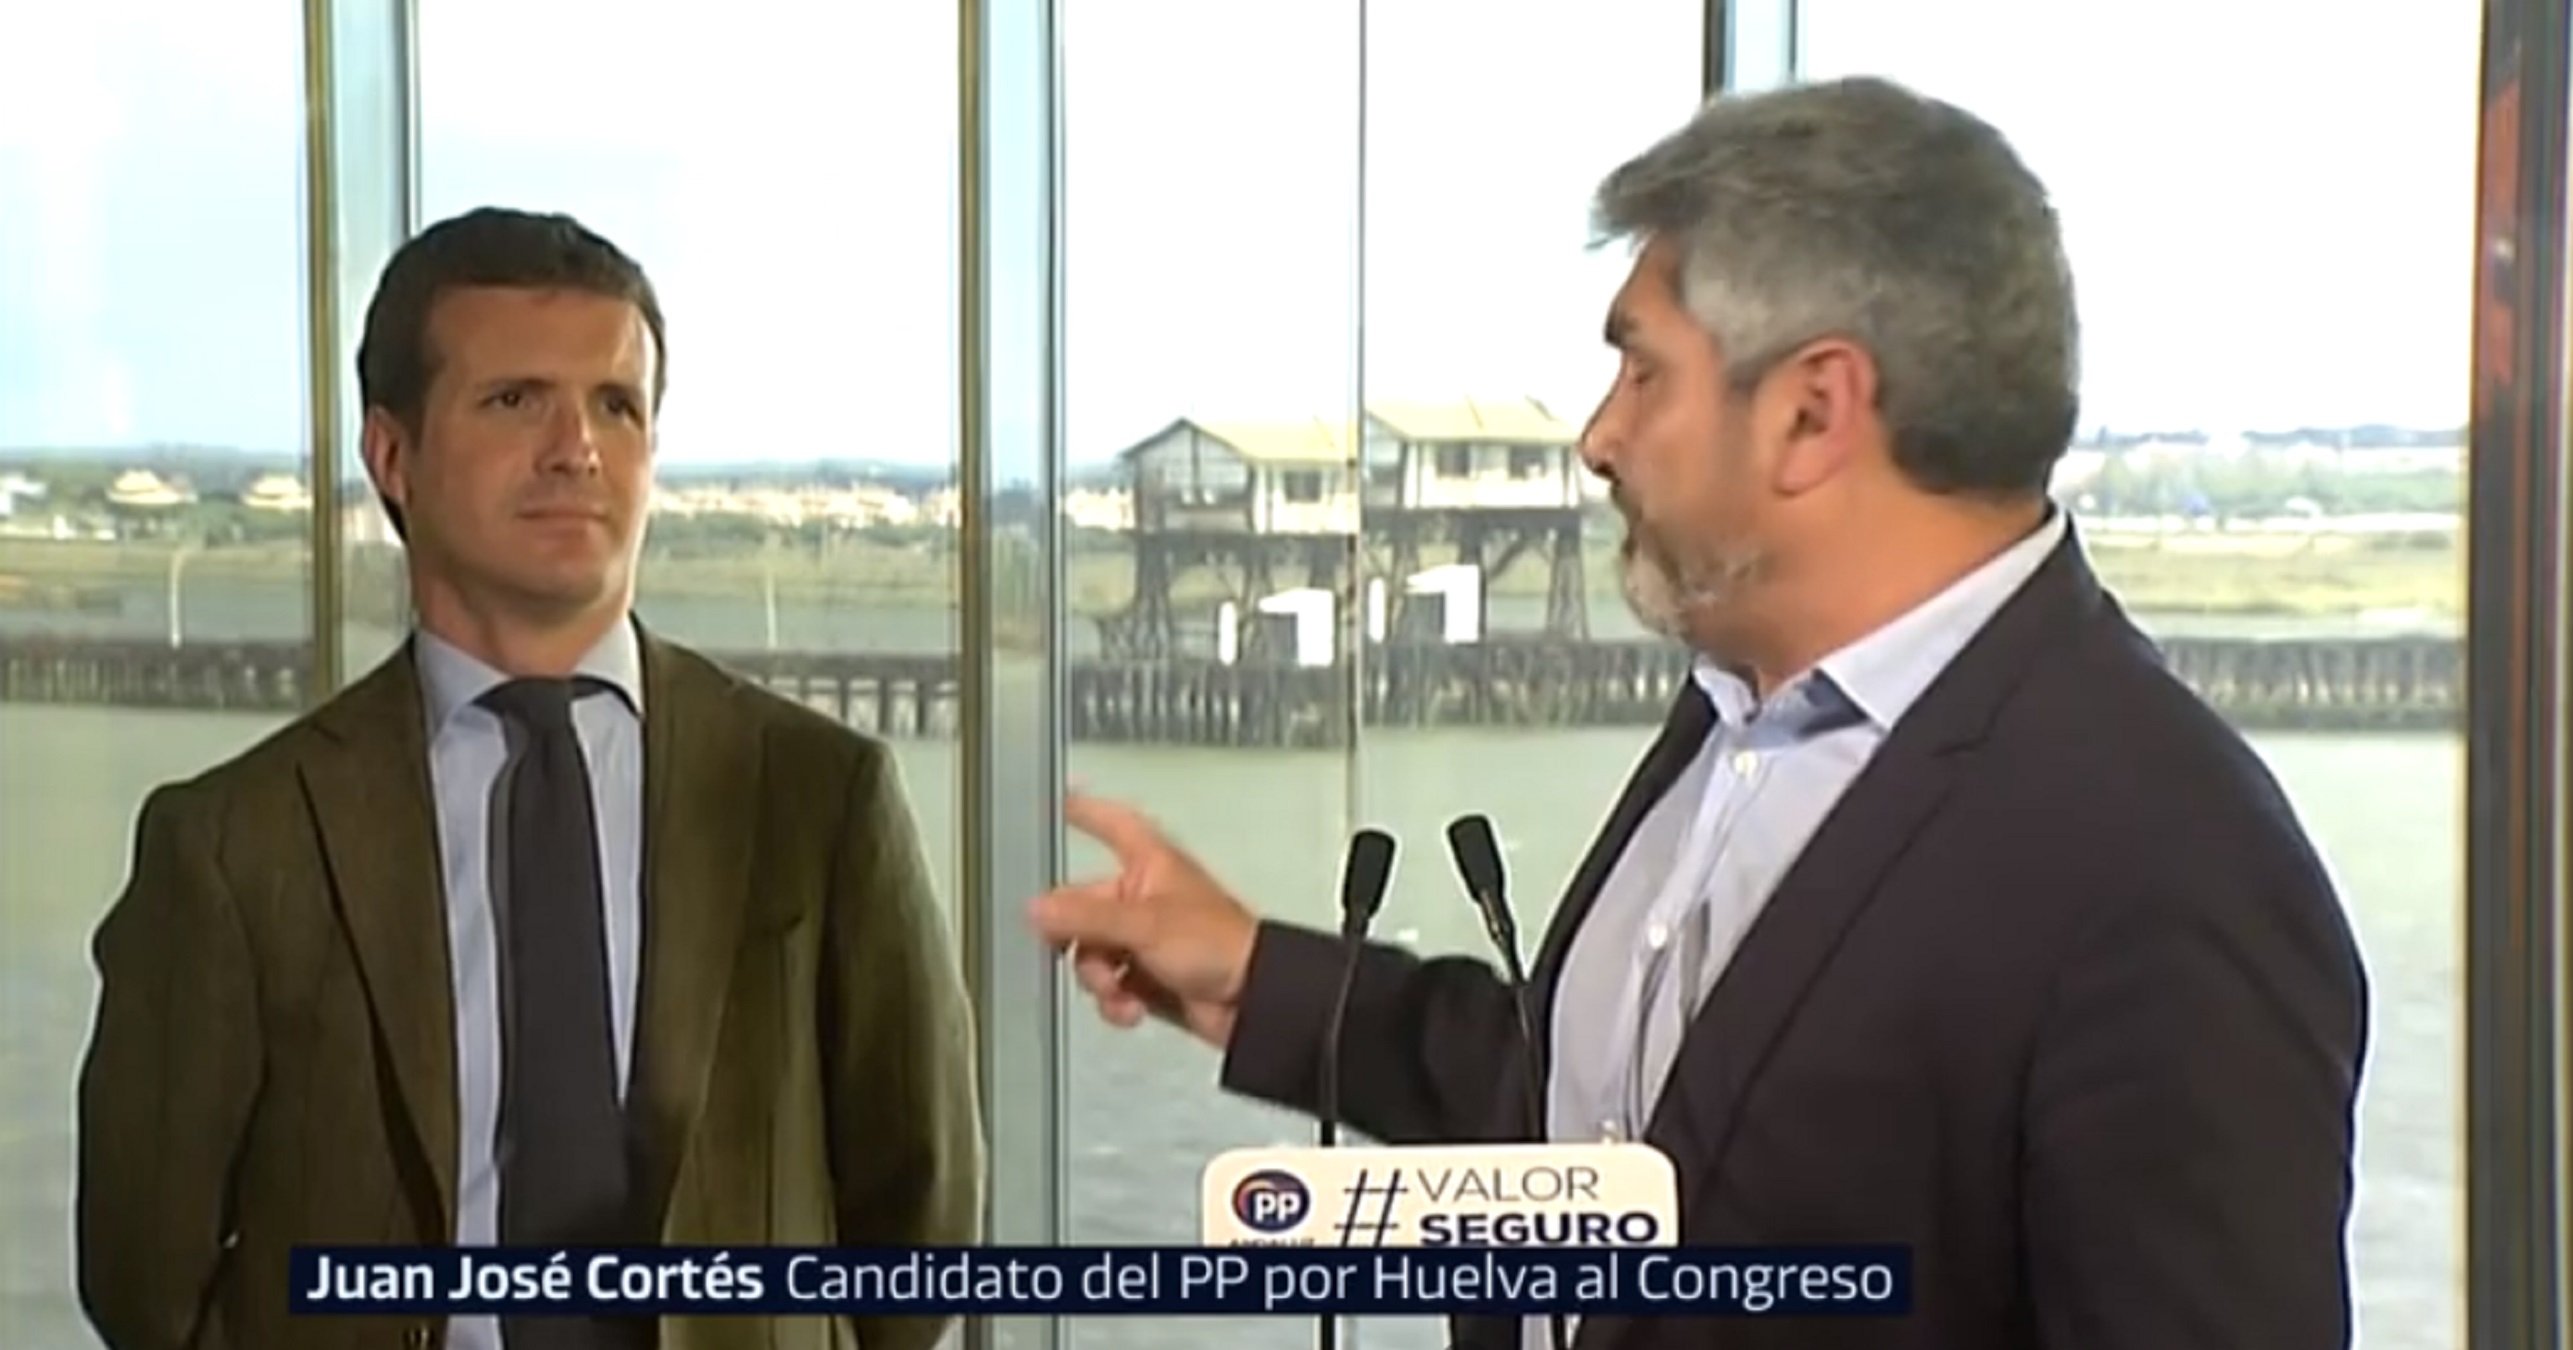 VÍDEO: Patètic míting d'un candidat del PP confonent el seu líder (i Casado, irat)